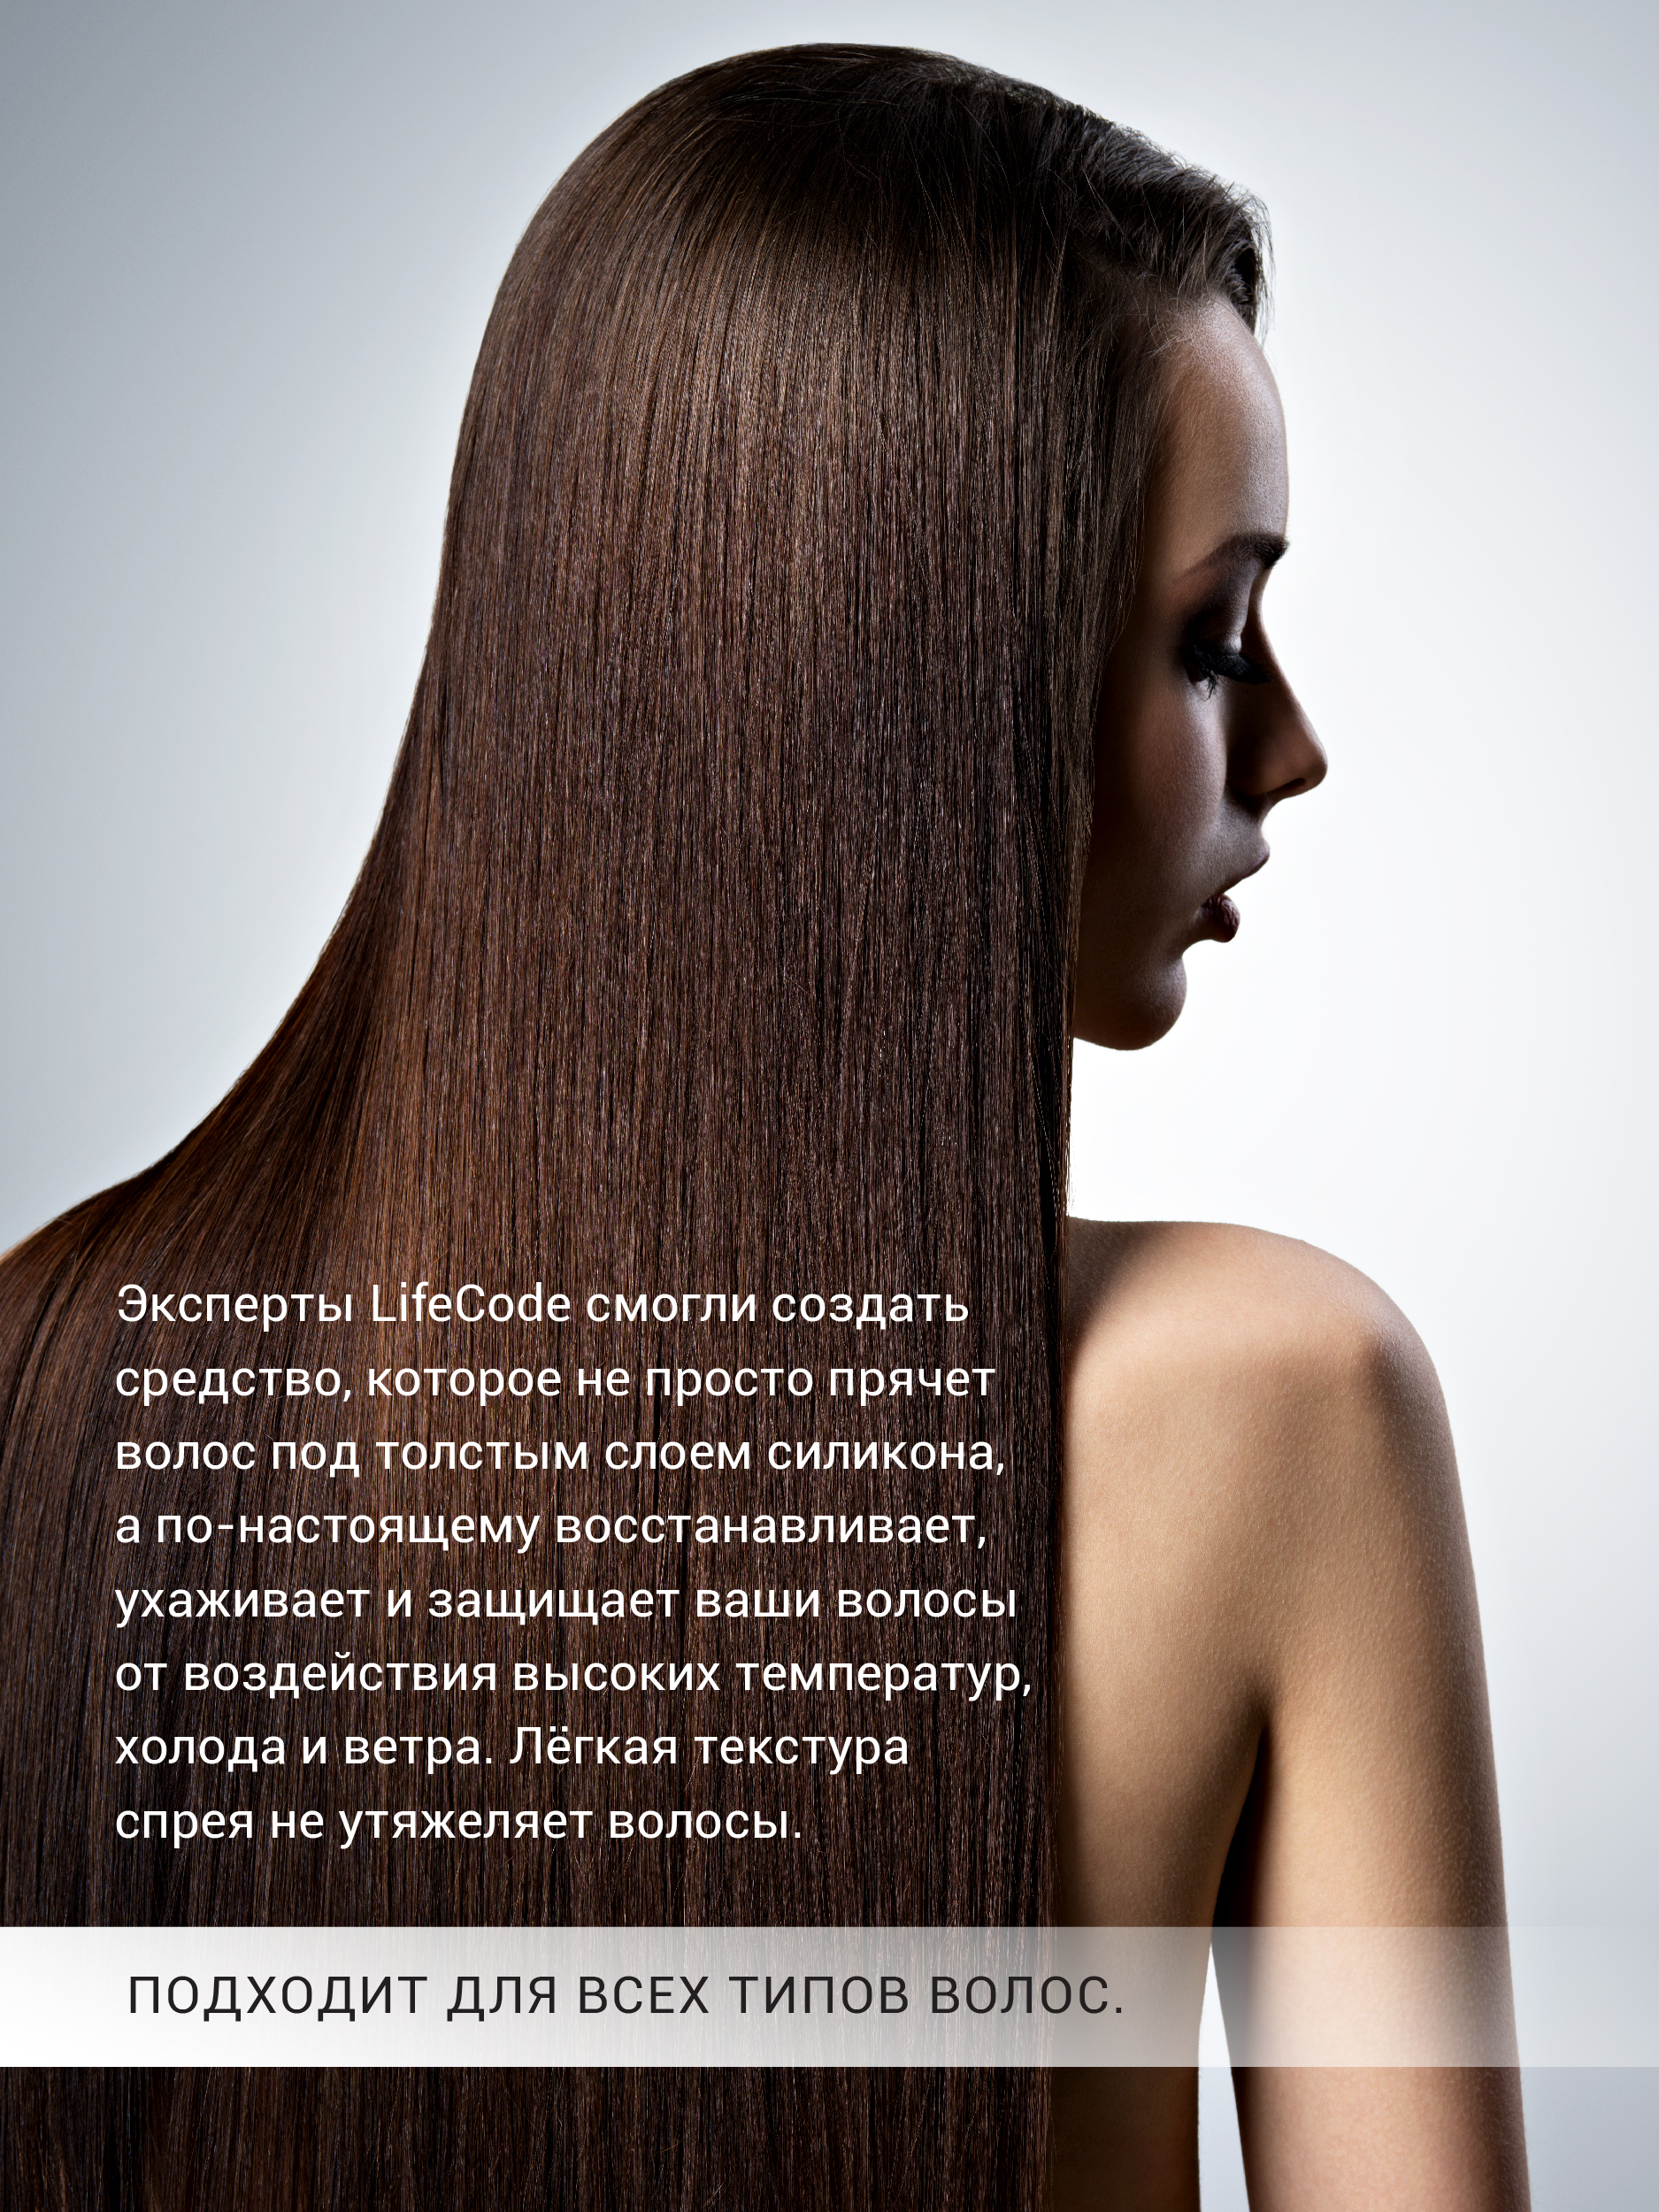 Спрей lifecode для волос 15 в 1 - фото 4